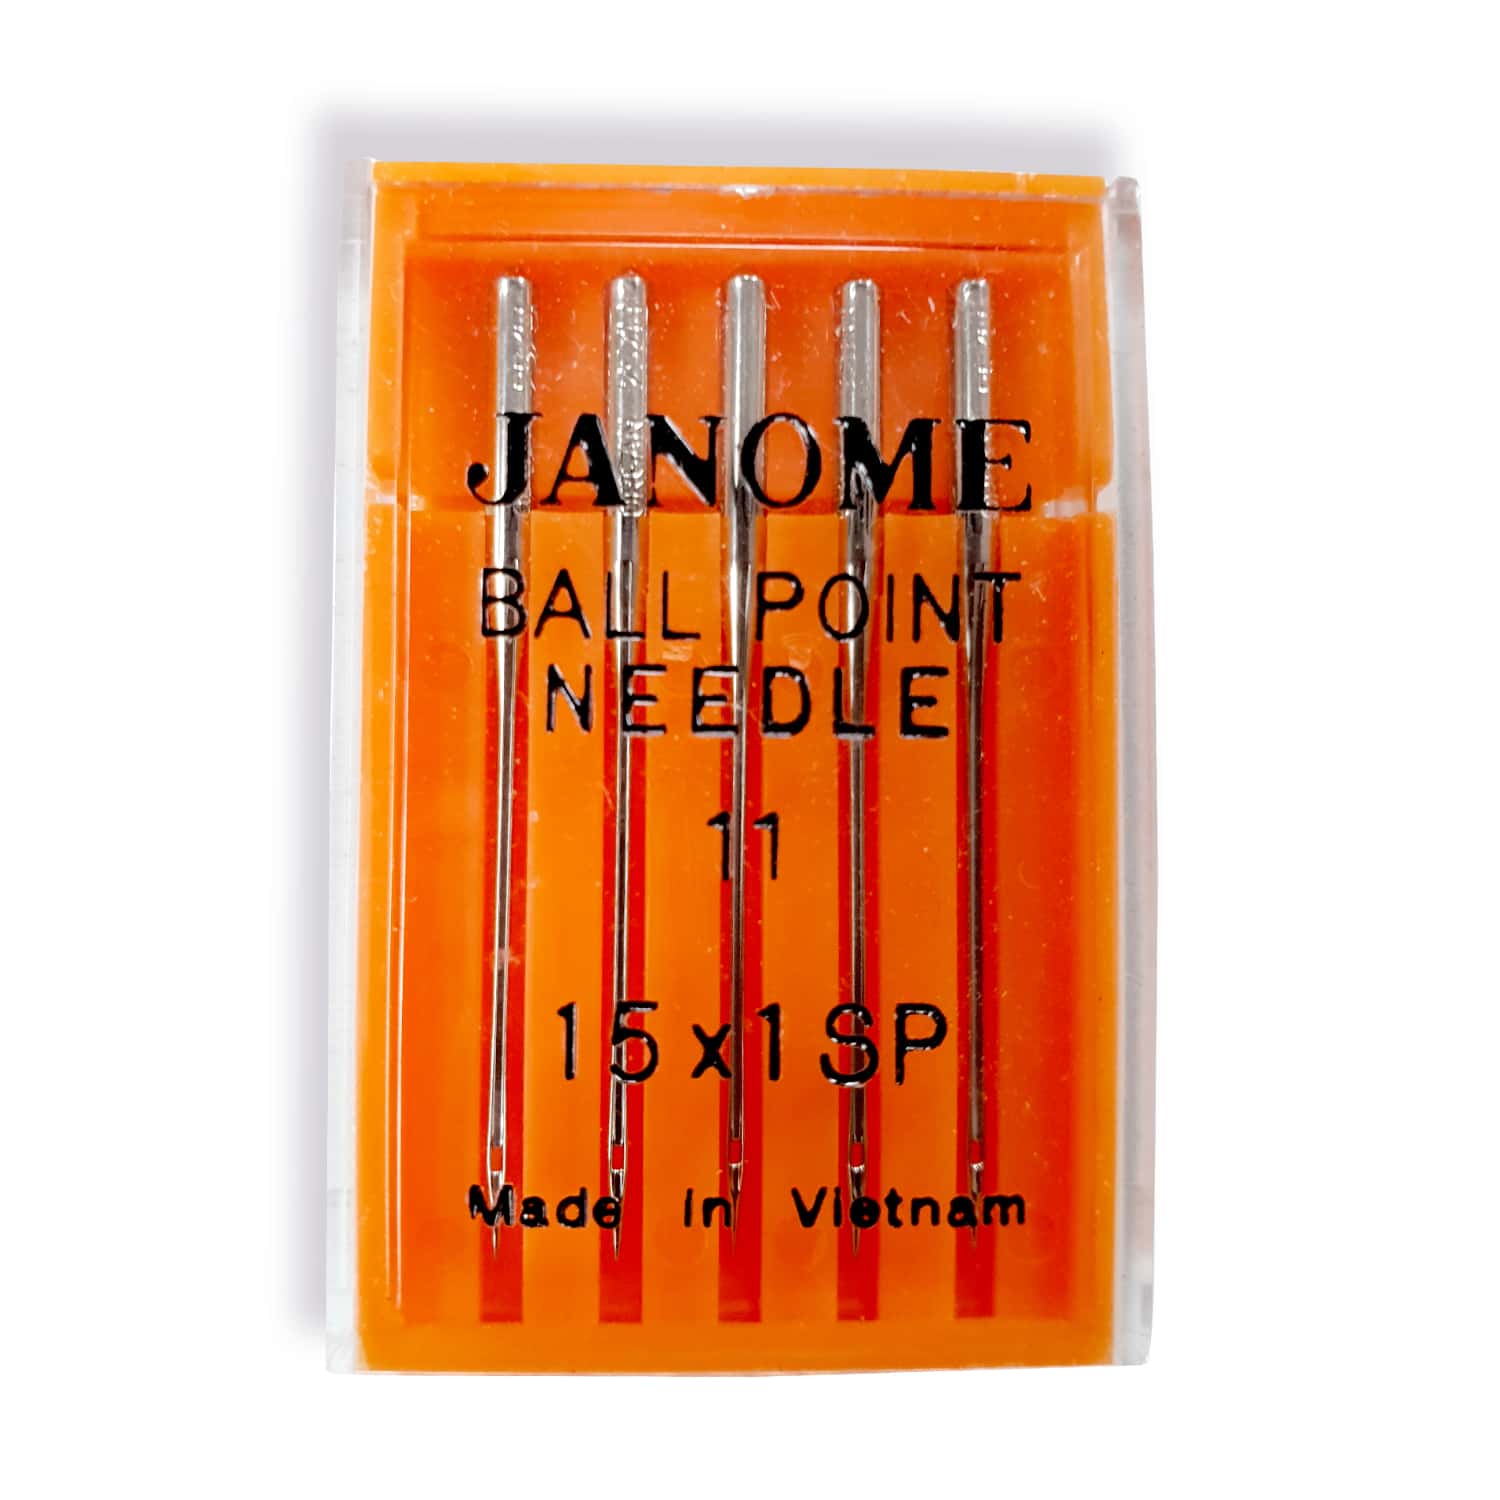 ballpoint needle